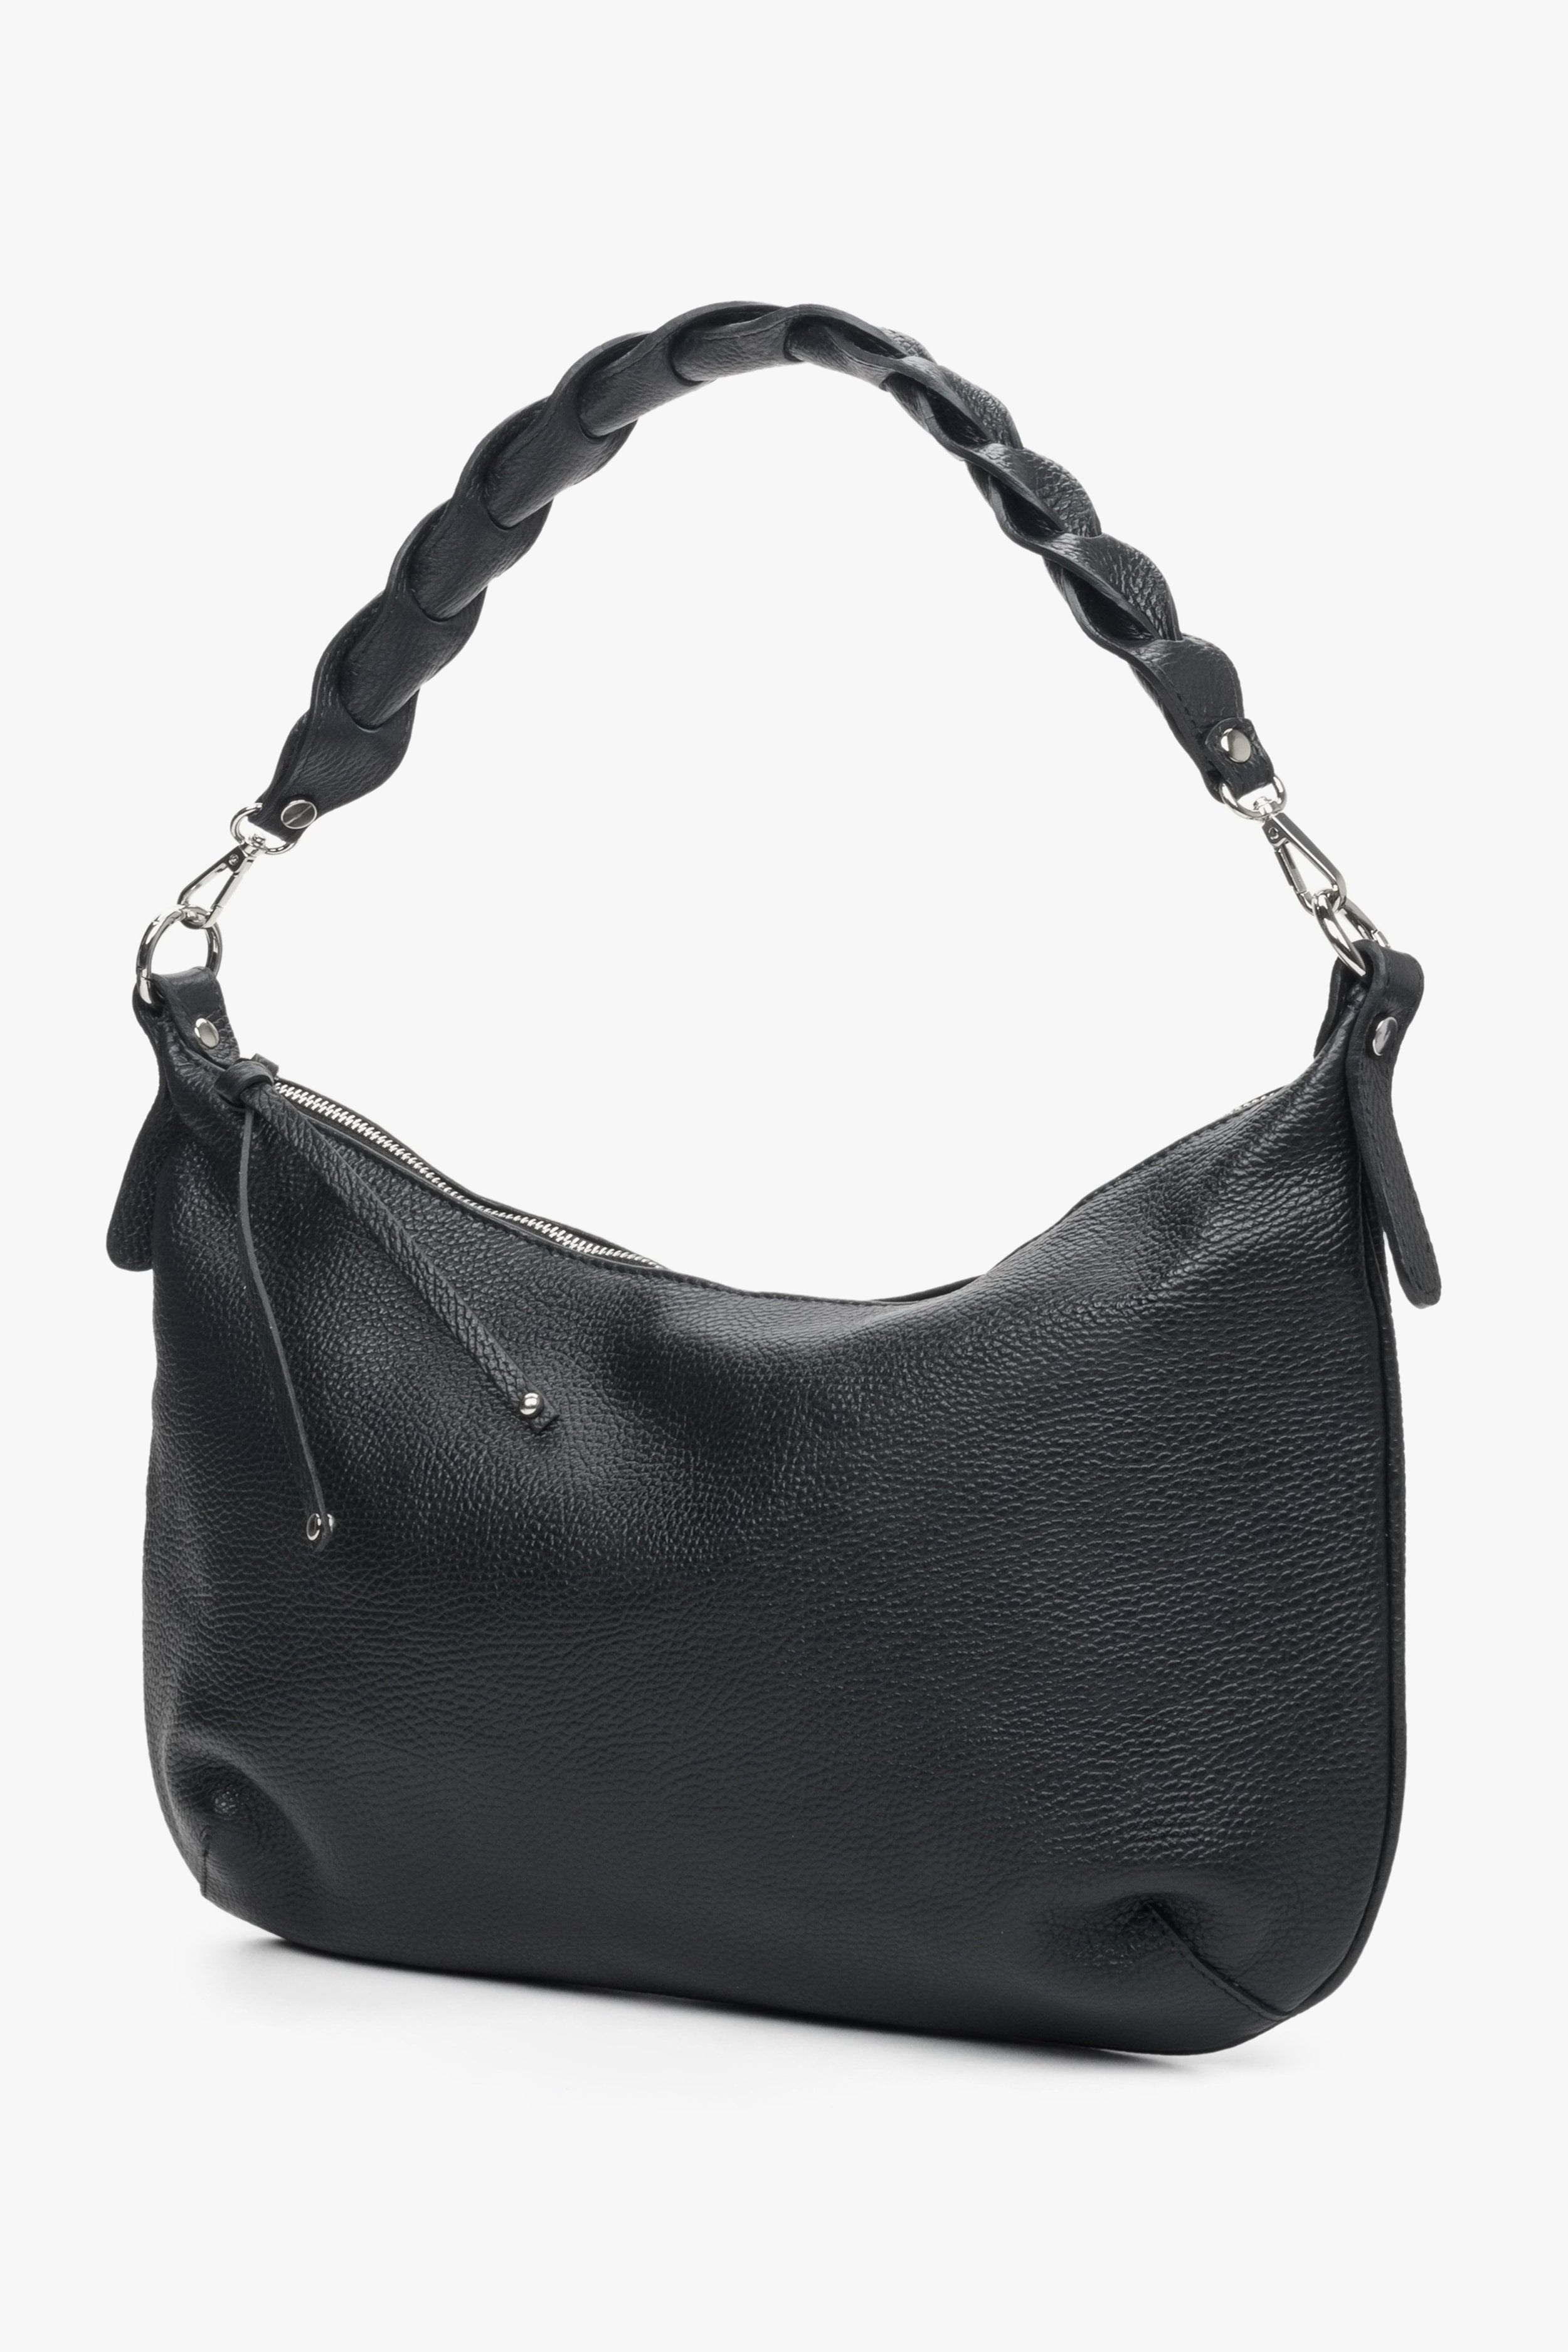 Estro: Czarna torebka damska typu shoulder bag z włoskiej skóry naturalnej